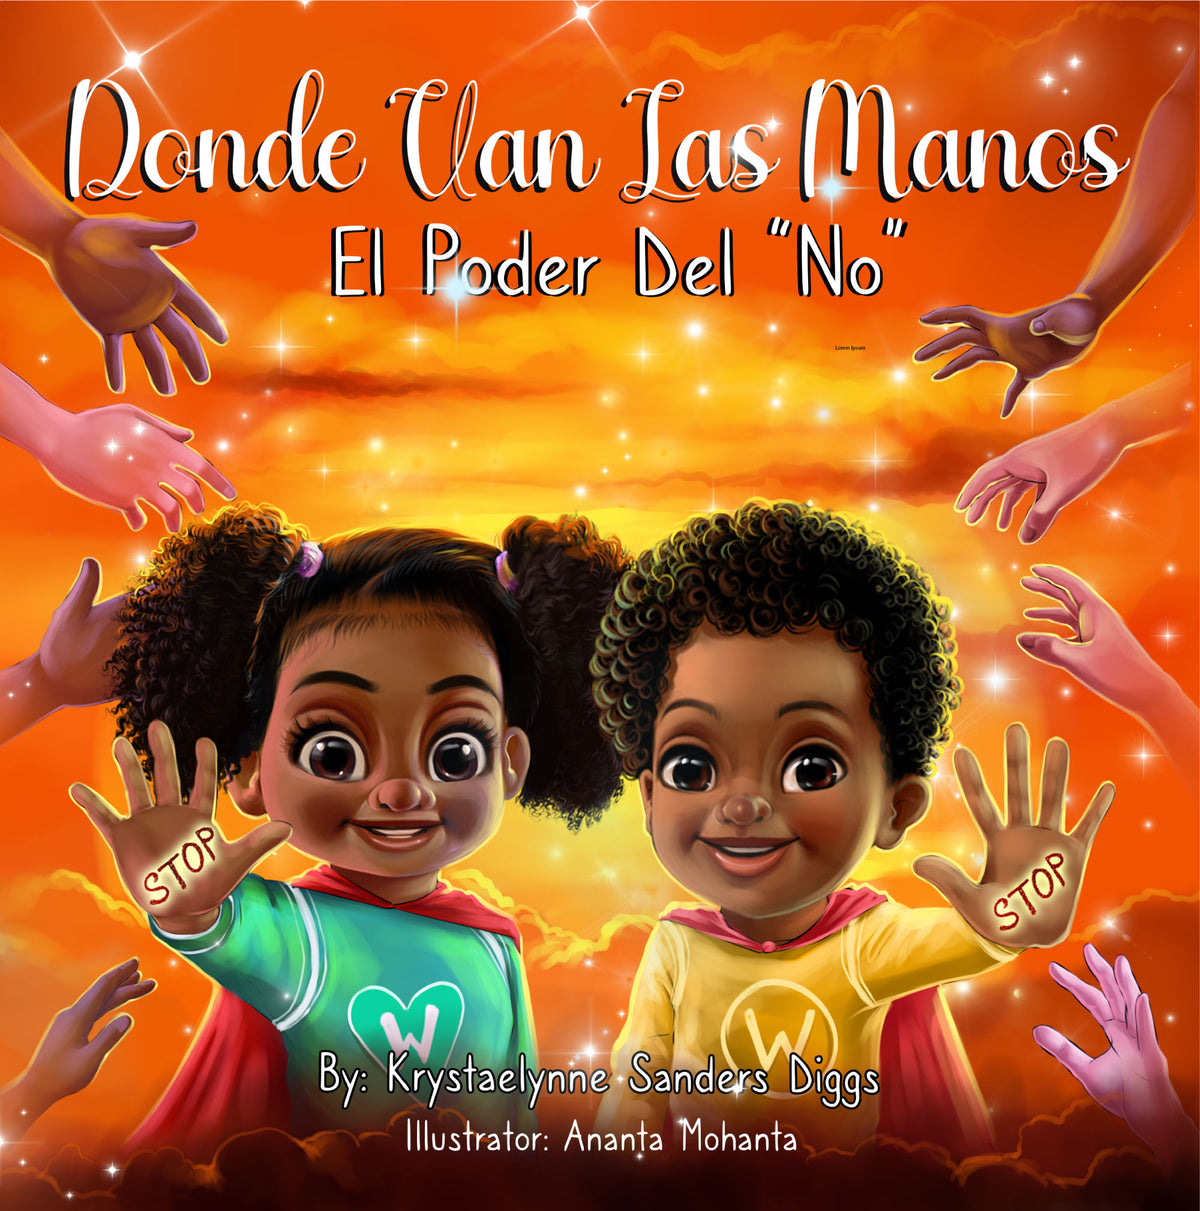 Donde Van Las Manos - El Poder Del "No" - Author Krystaelynne Sanders Diggs [Body Safety]